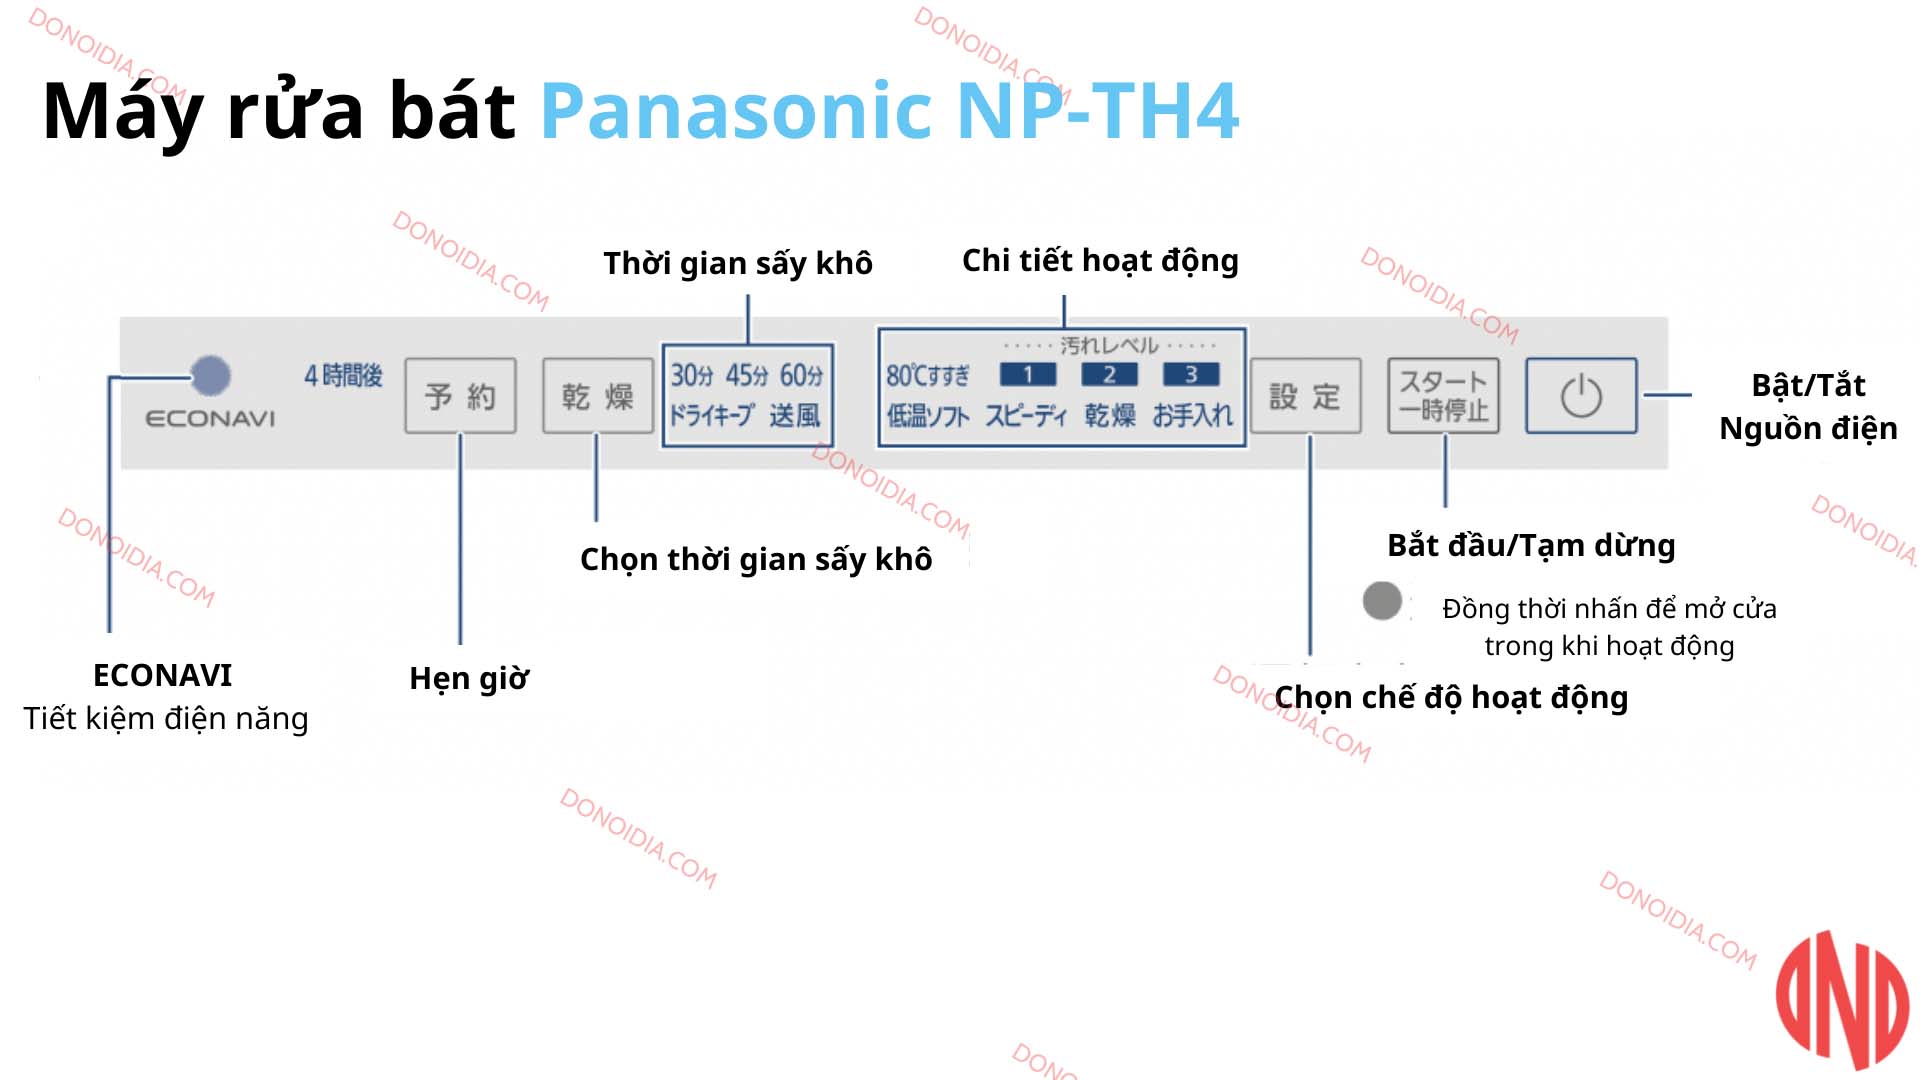 Hướng dẫn sử dụng máy rửa bát Panasonic NP-TH4